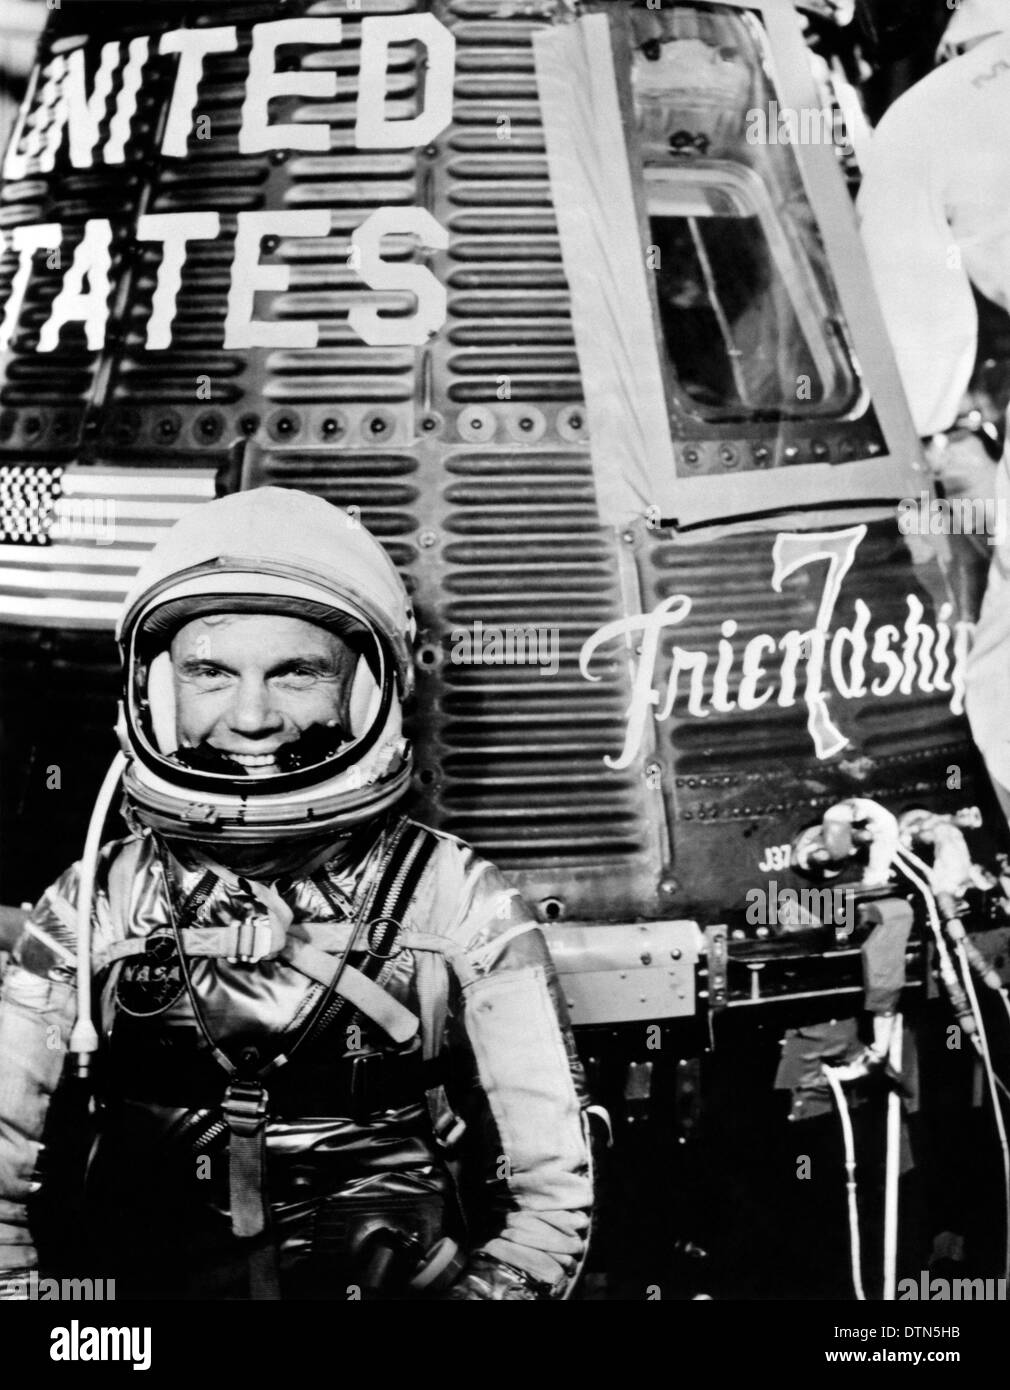 Noi astronauta John Glenn Jr., pilota del mercurio Atlas 6 volo spaziale, in posa per una foto con il Mercurio " Amicizia 7' veicolo spaziale durante le attività di preflight Febbraio 1962 presso il Kennedy Space Center, Florida. Glenn pilotata la navicella spaziale sul primo presidiata missione orbitale degli Stati Uniti completato con successo una tre-missione in orbita attorno alla terra su Feb 20, 1962. Foto Stock